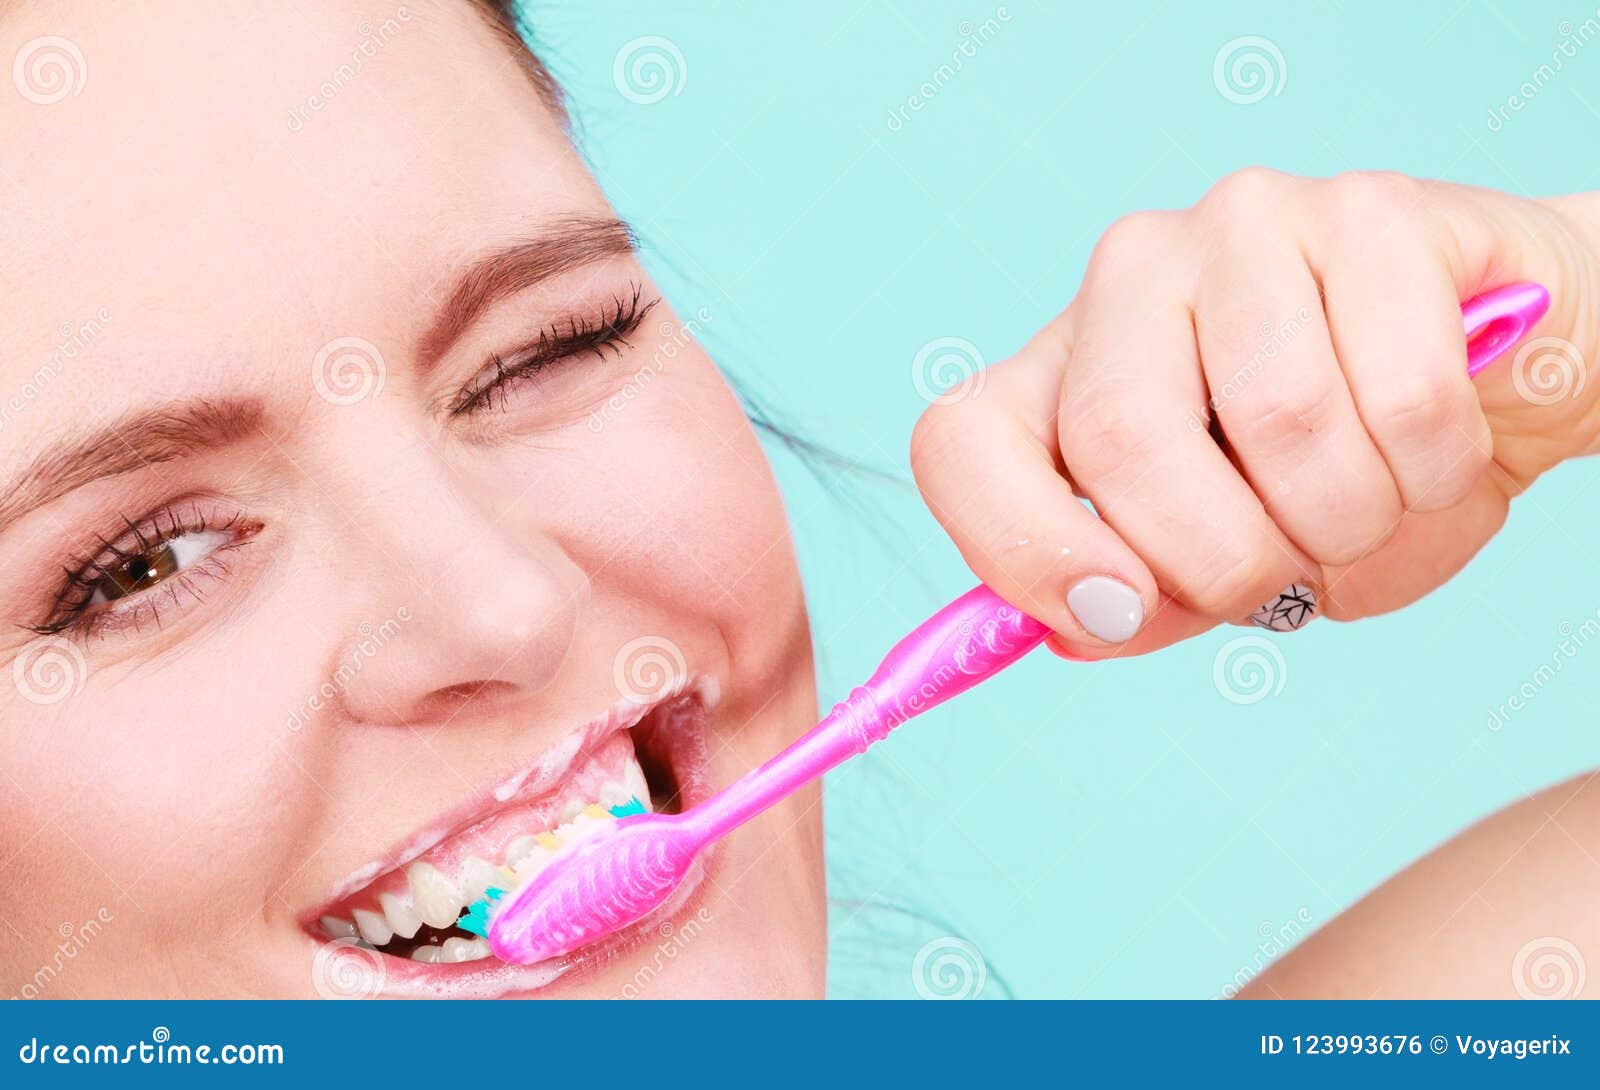 Зубы нужно чистить до или после завтрака. Гигиена полости рта. Девушка с зубной щеткой. Чистка зубов после завтрака. Гигиена полости рта и бактерии.